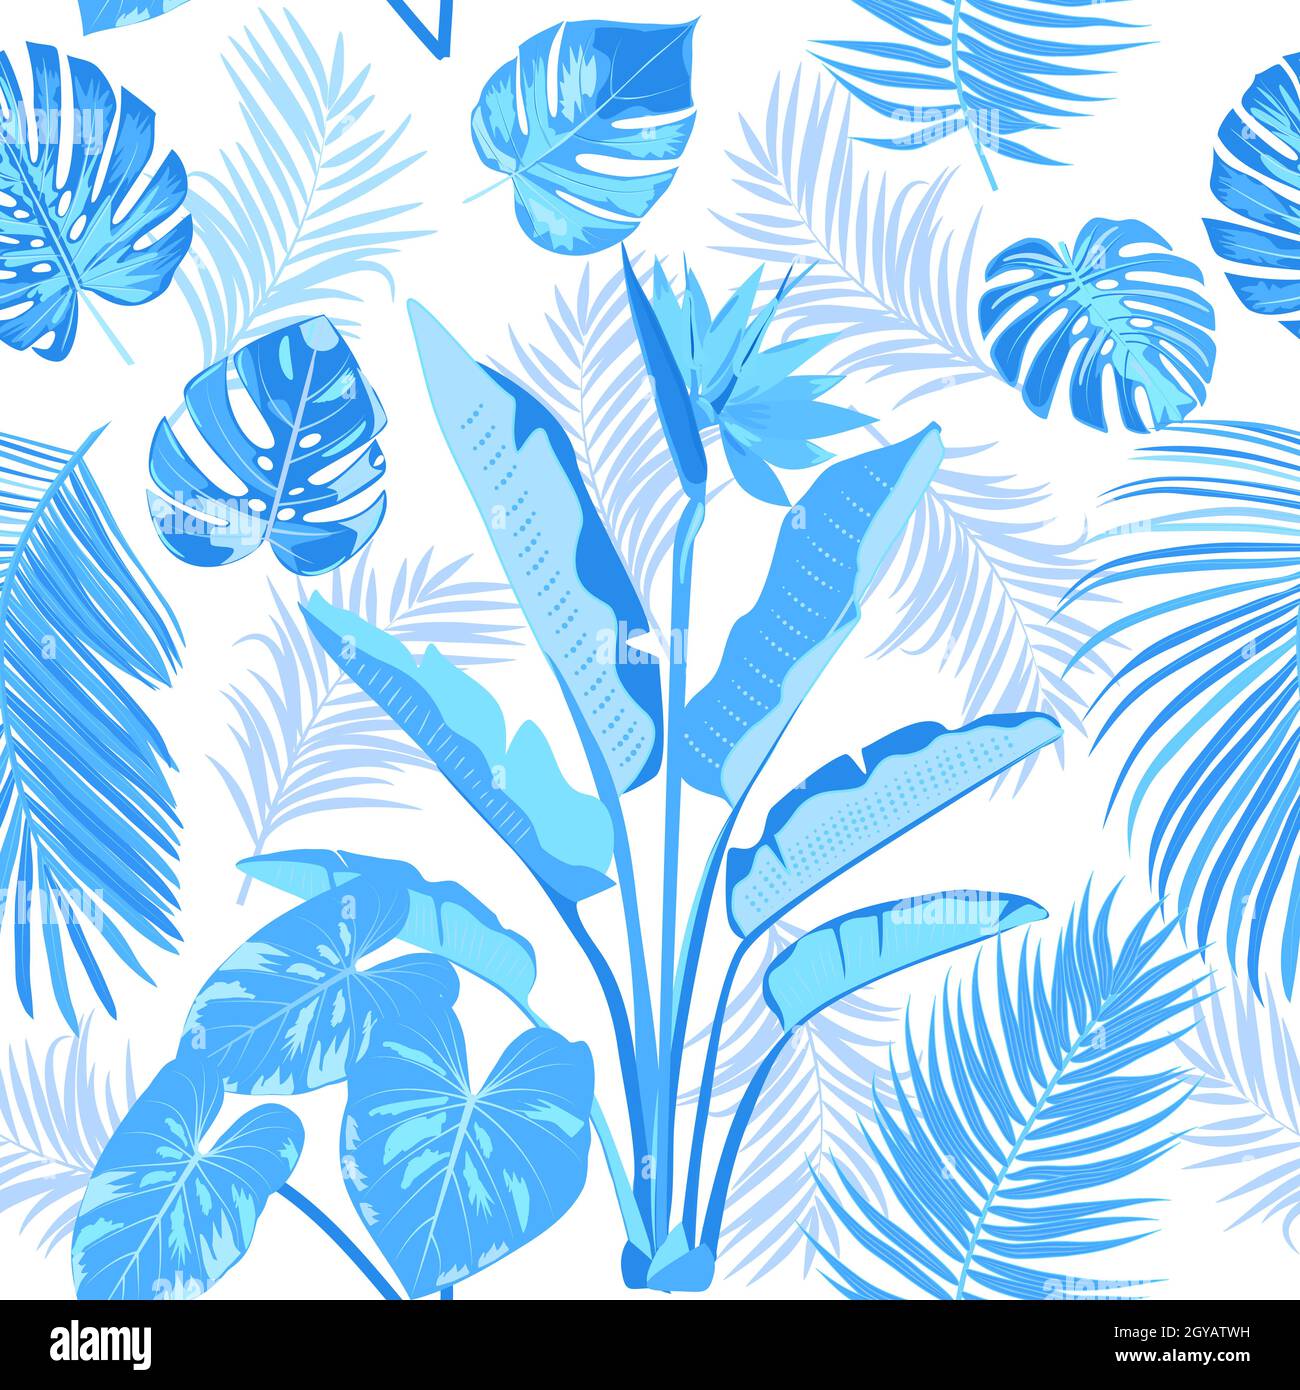 Disegno vettoriale tropicale senza giunture con foglie blu di palme e fiori. Sfondo chiaro botanica, carta da parati giungla. Illustrazione Vettoriale